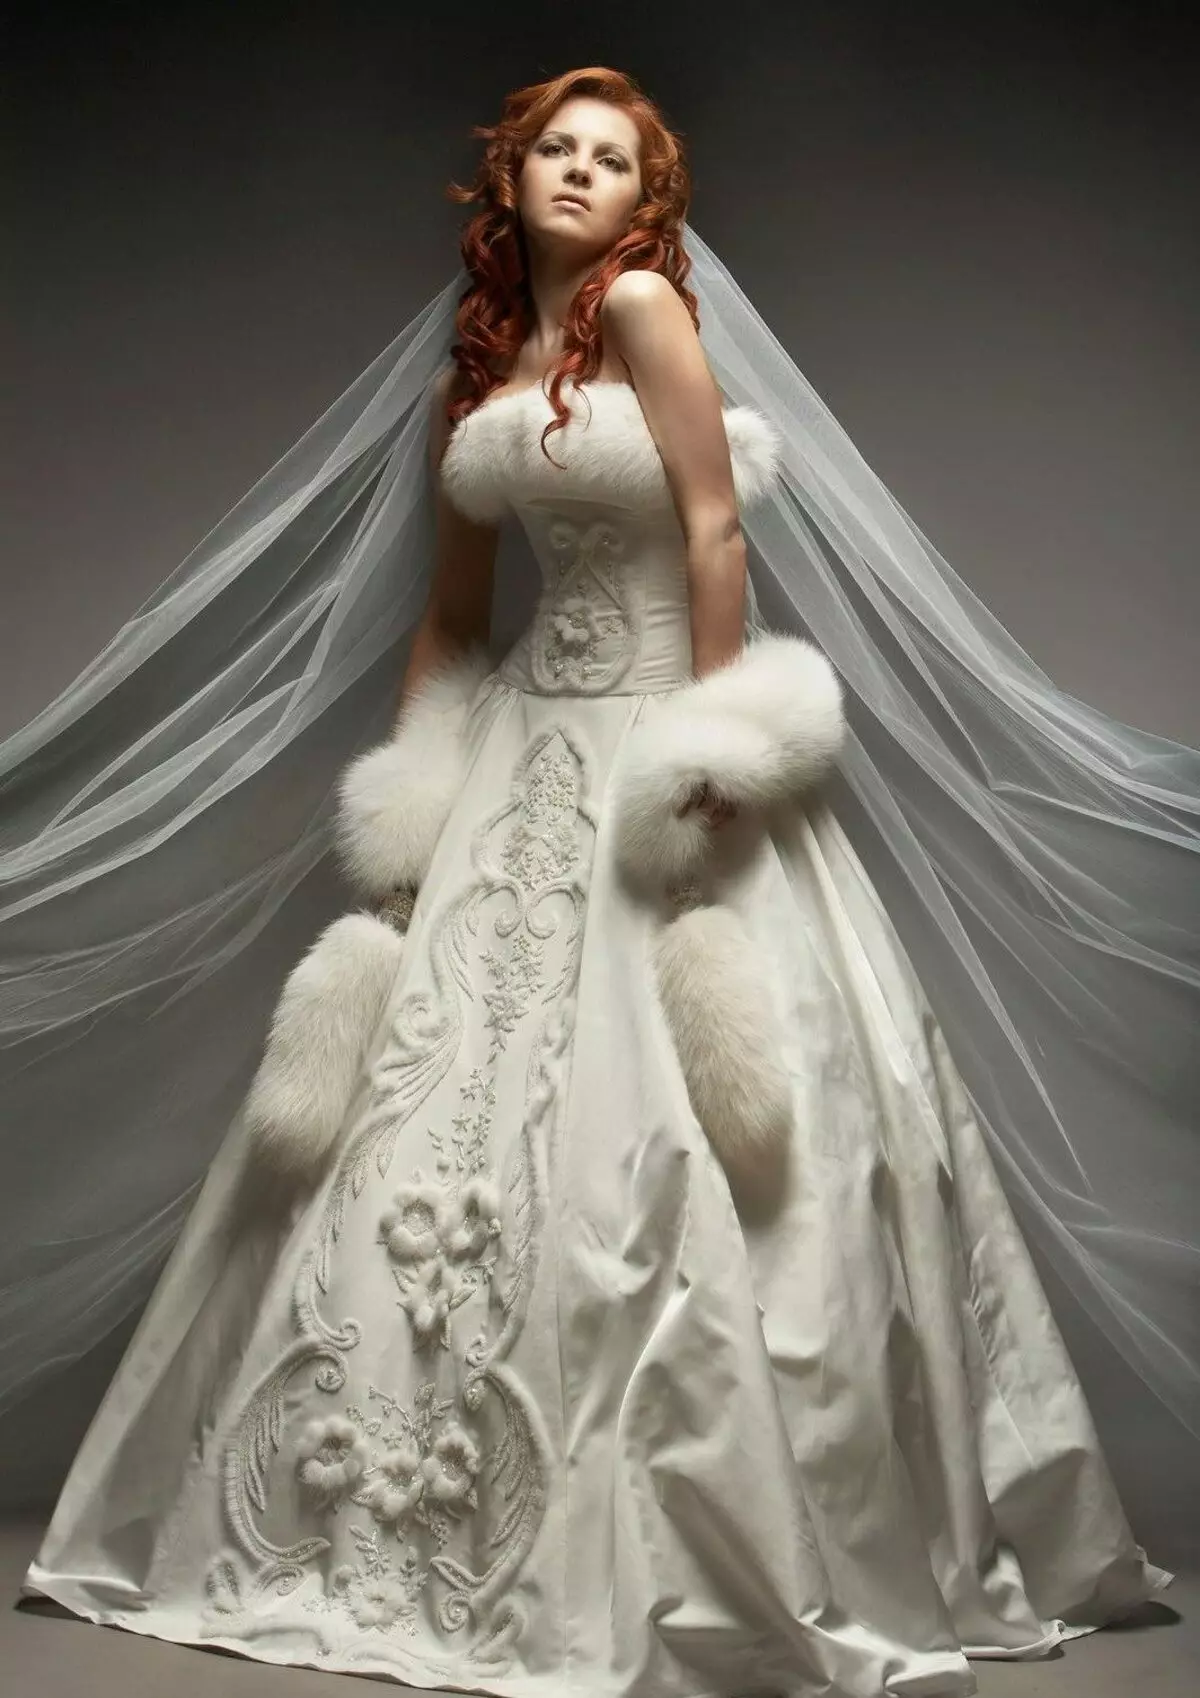 Téli esküvői ruha